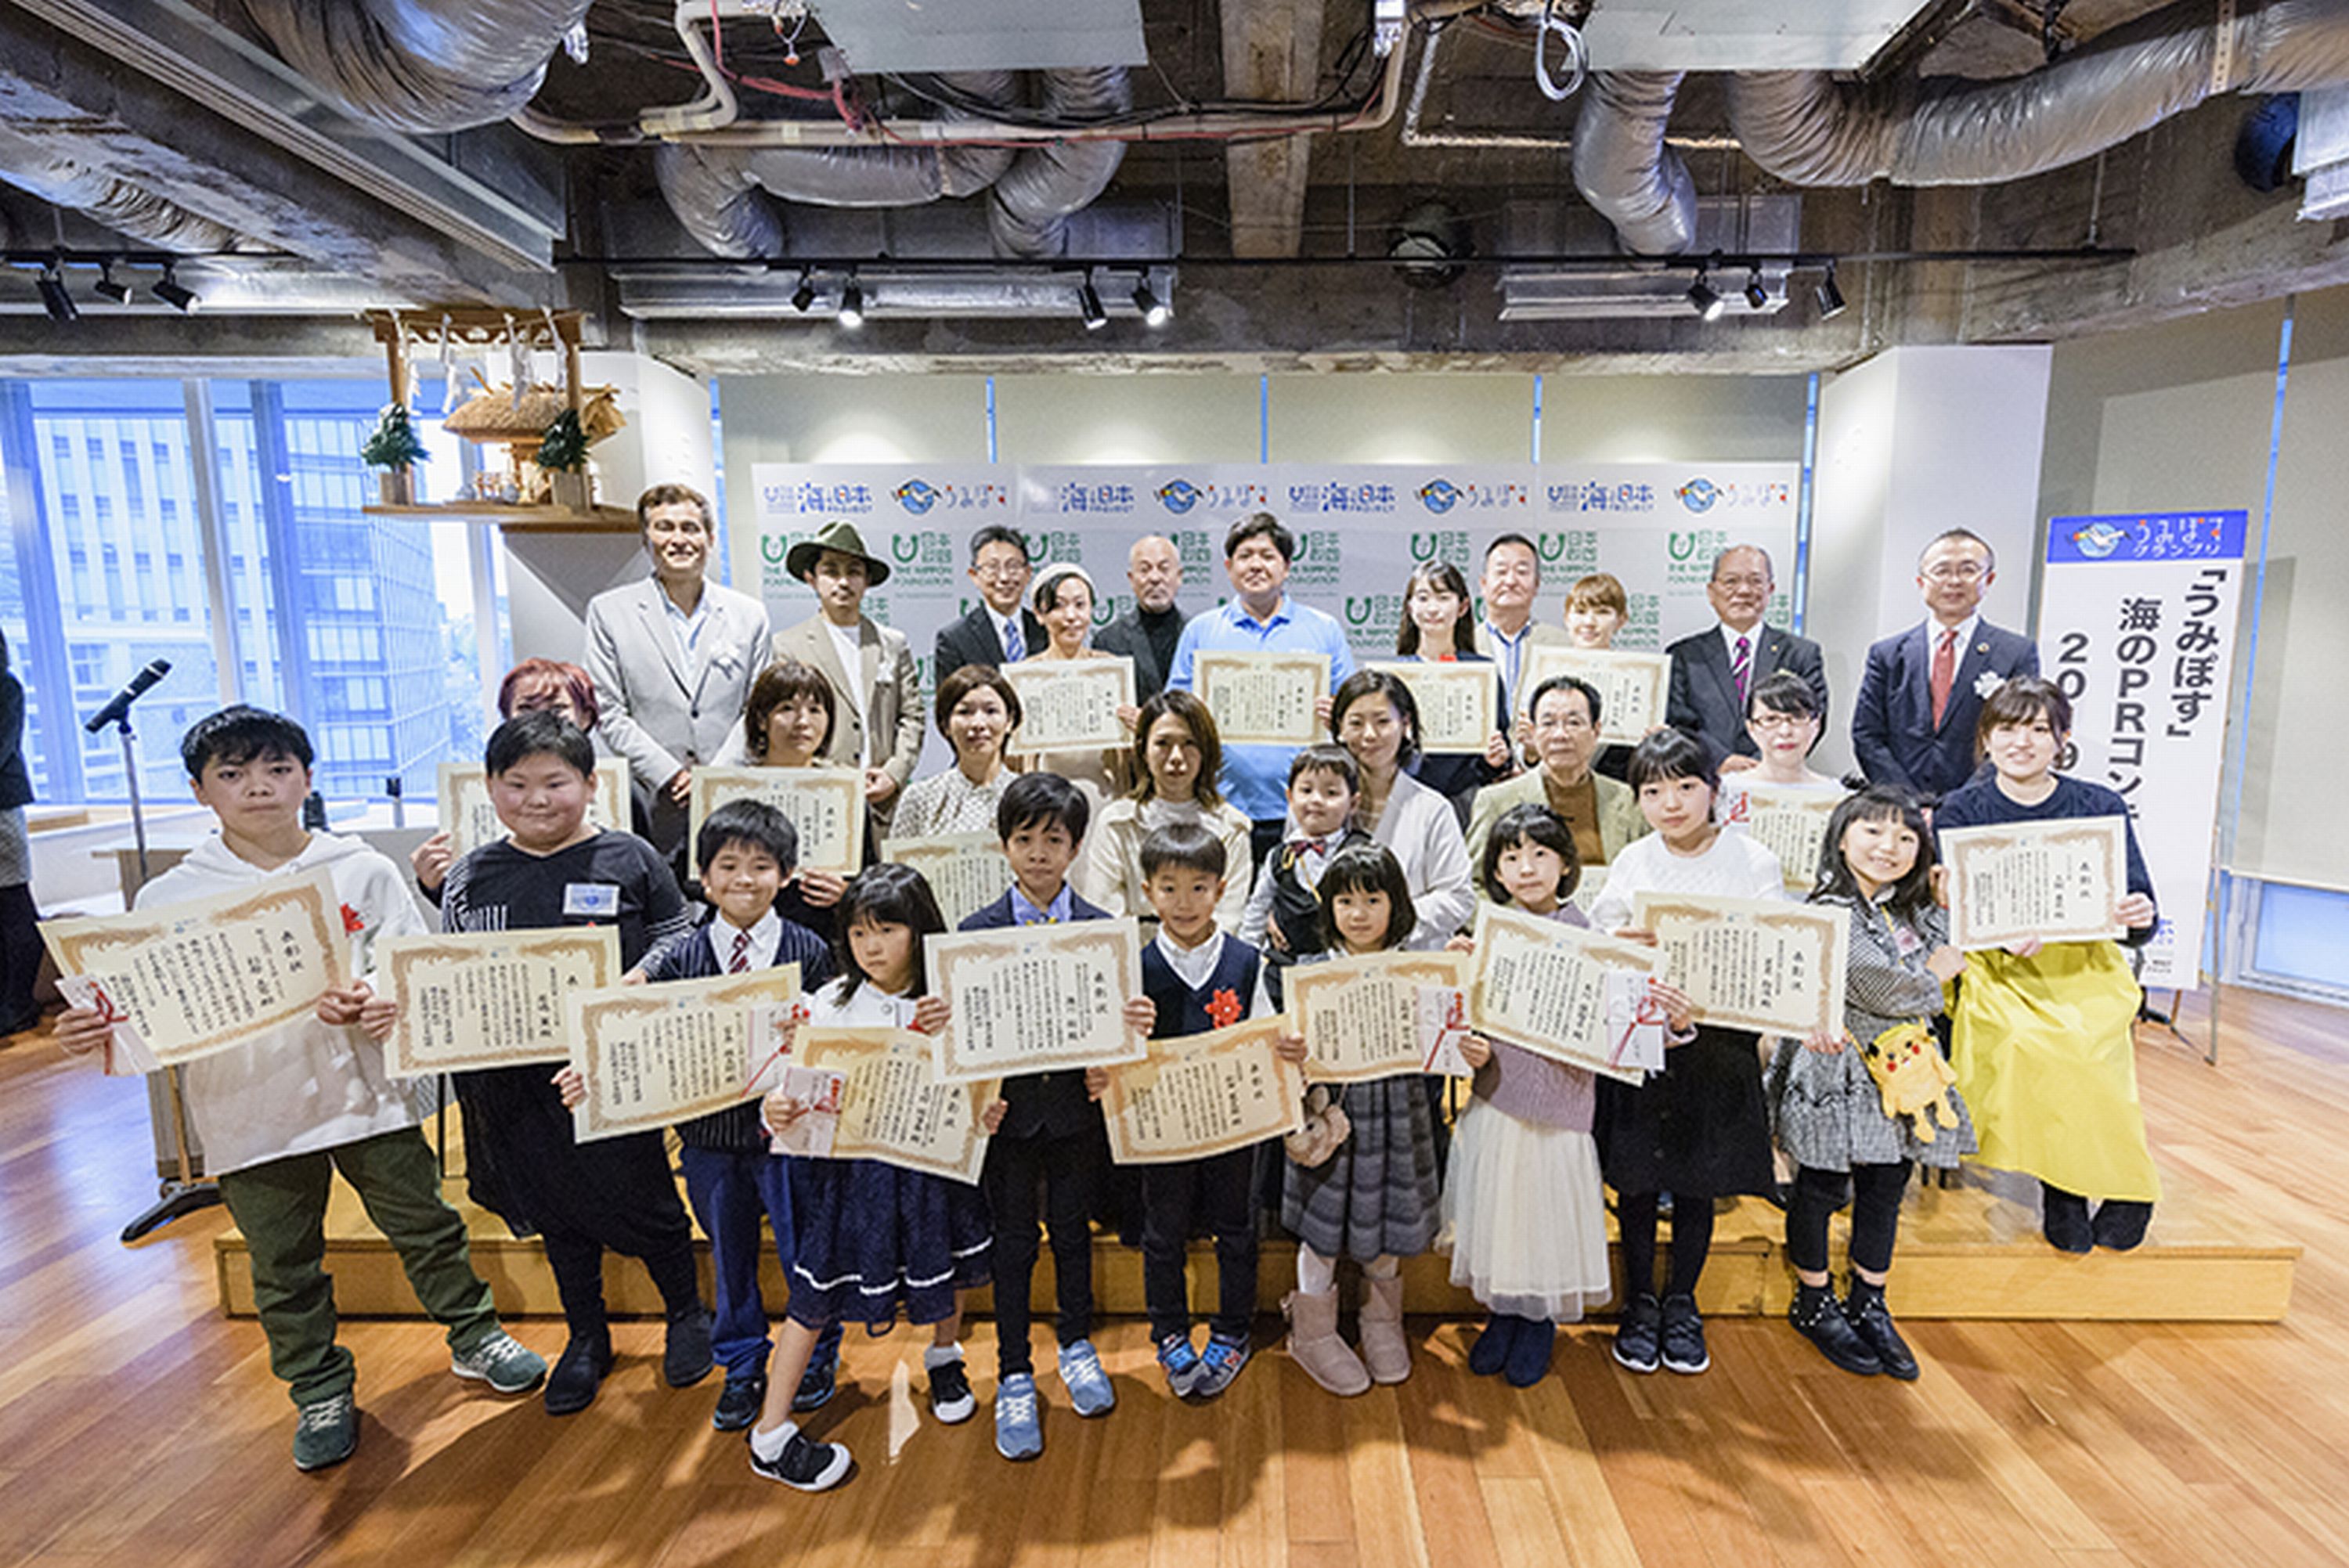 うみぽす 海のprコンテスト19 表彰式 展示会 海と日本project 日本財団